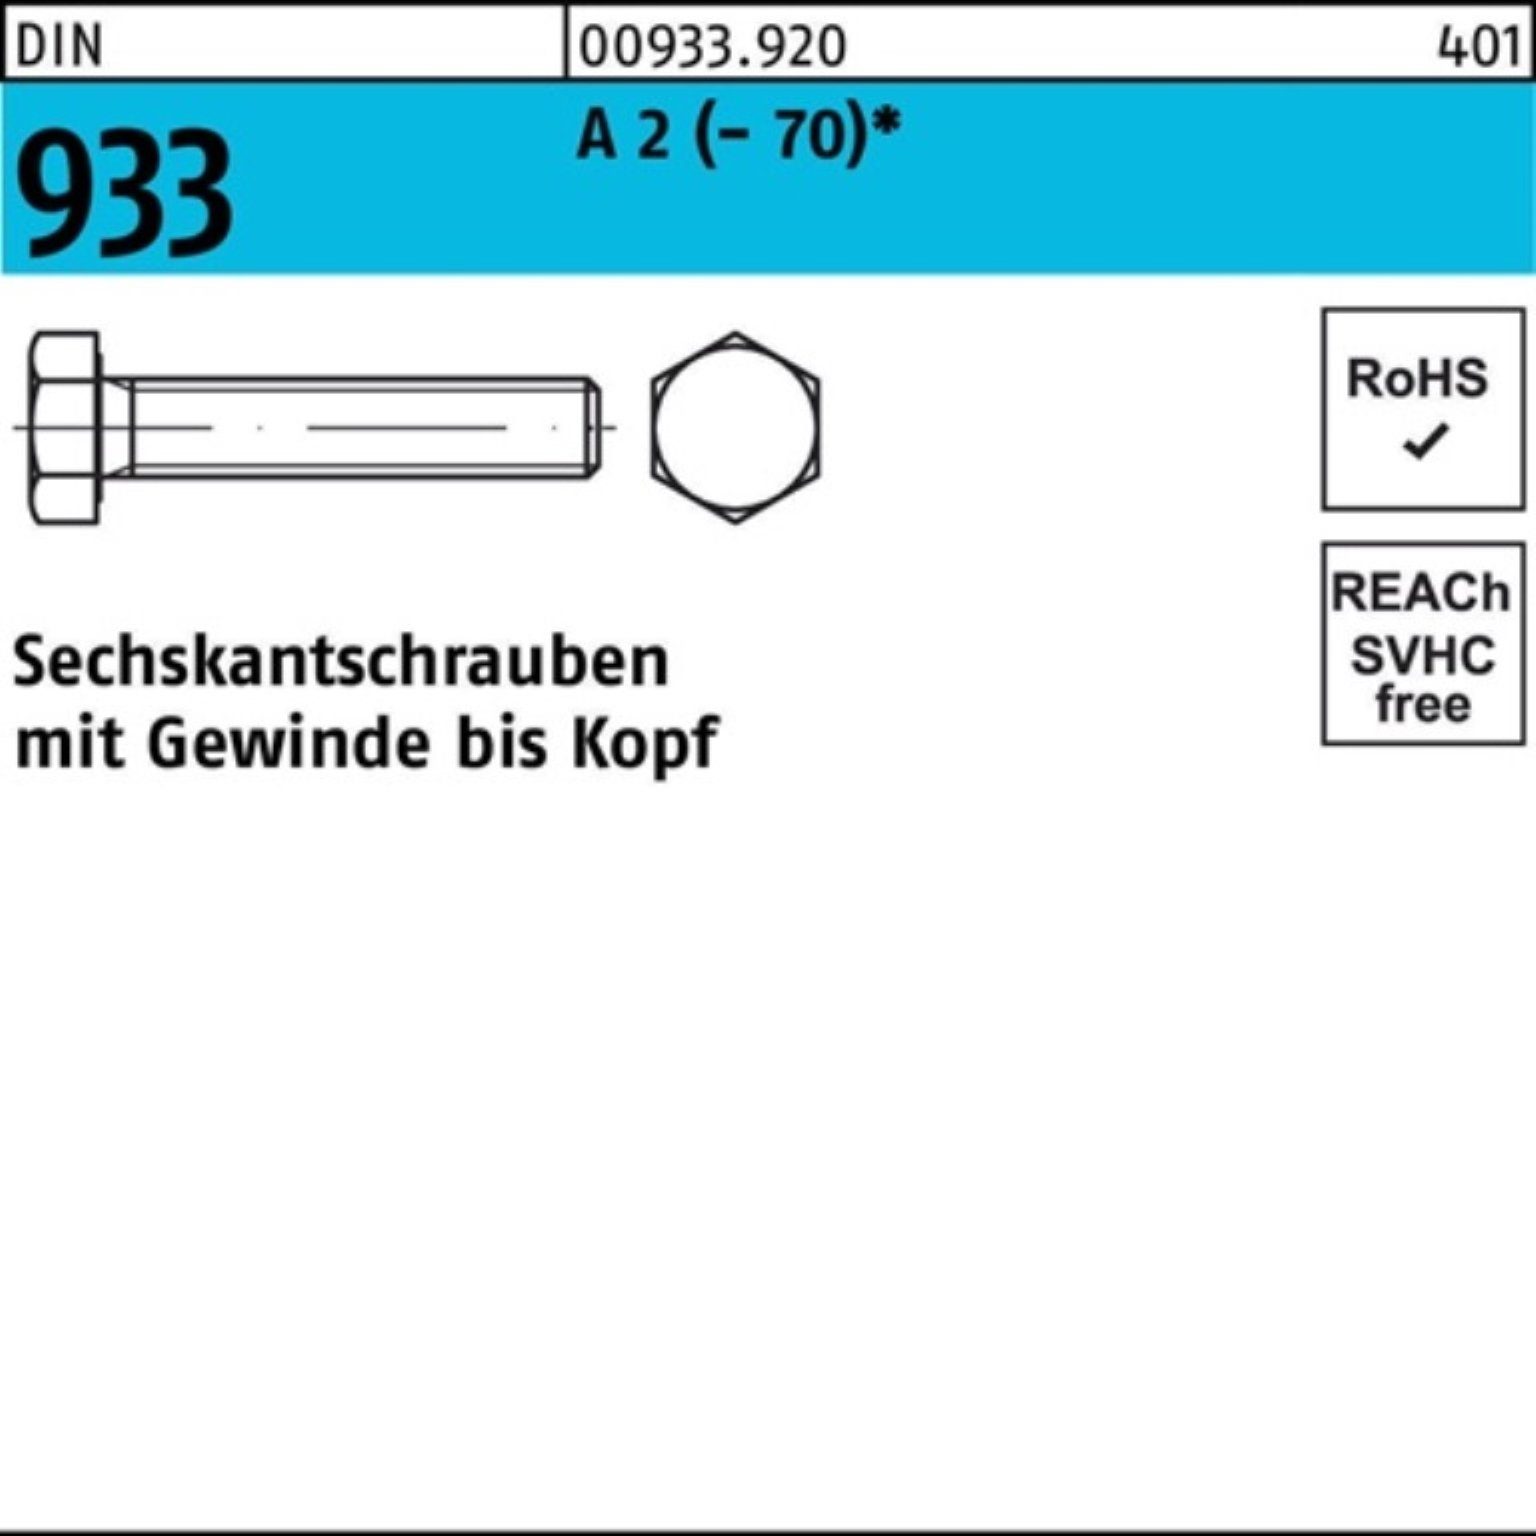 Reyher Sechskantschraube (70) D Pack M6x VG 200er 35 A Stück Sechskantschraube 933 2 DIN 200